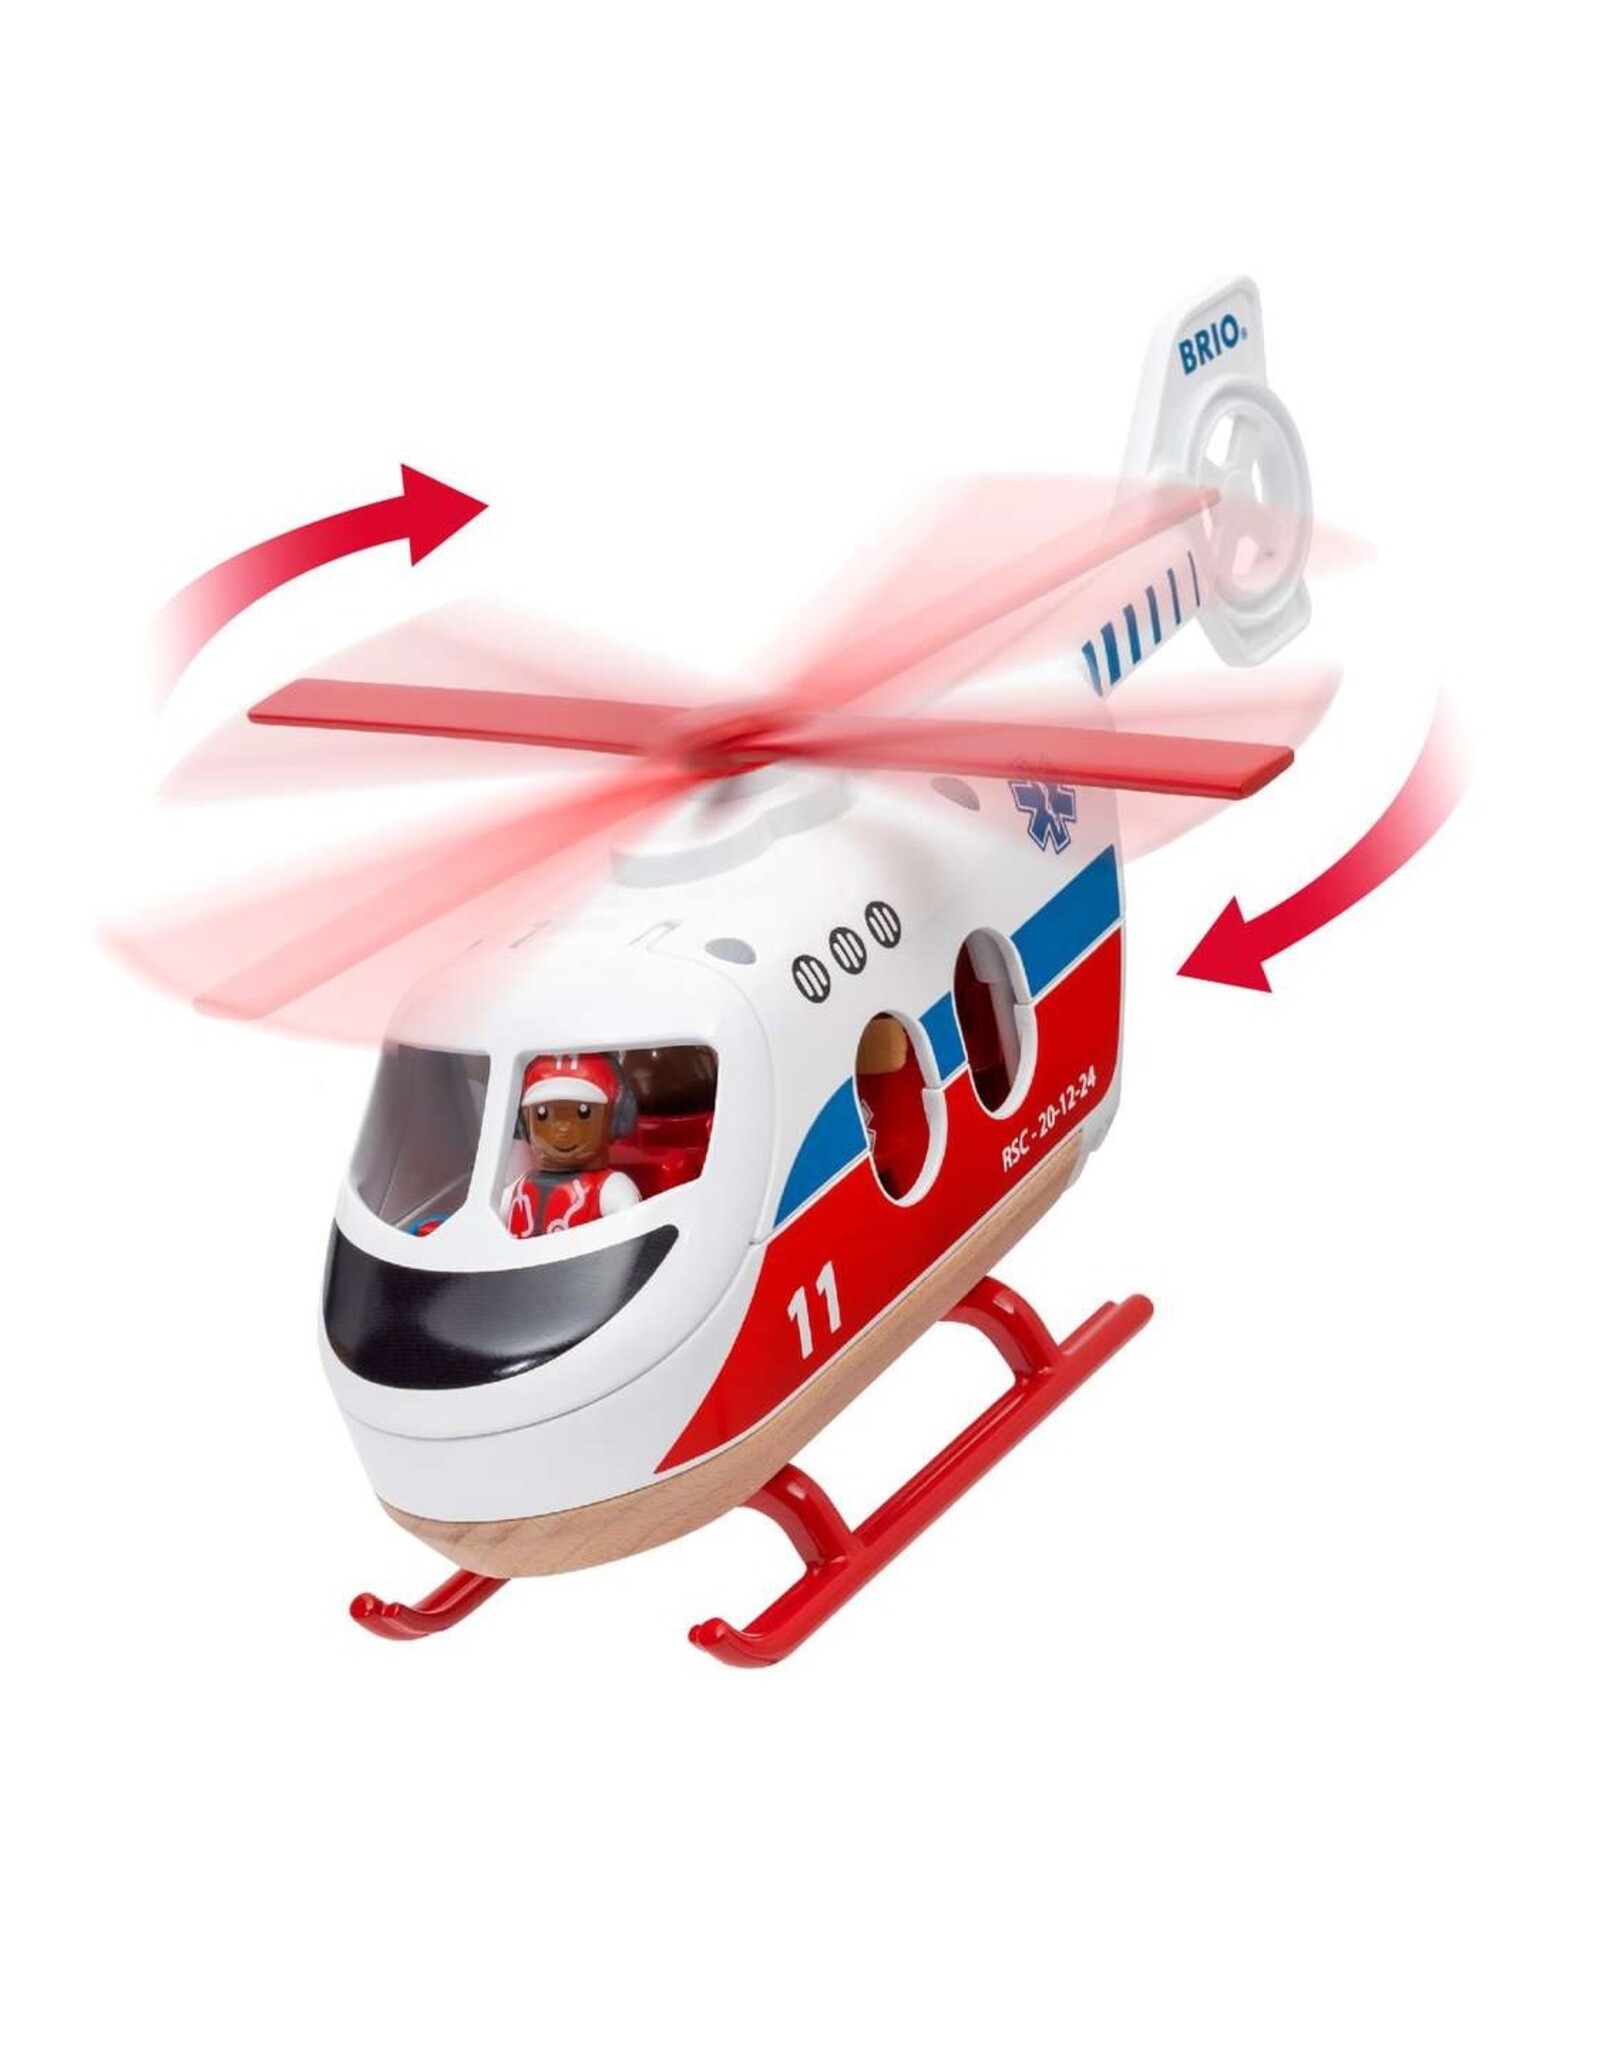 Brio Rescue helicopter